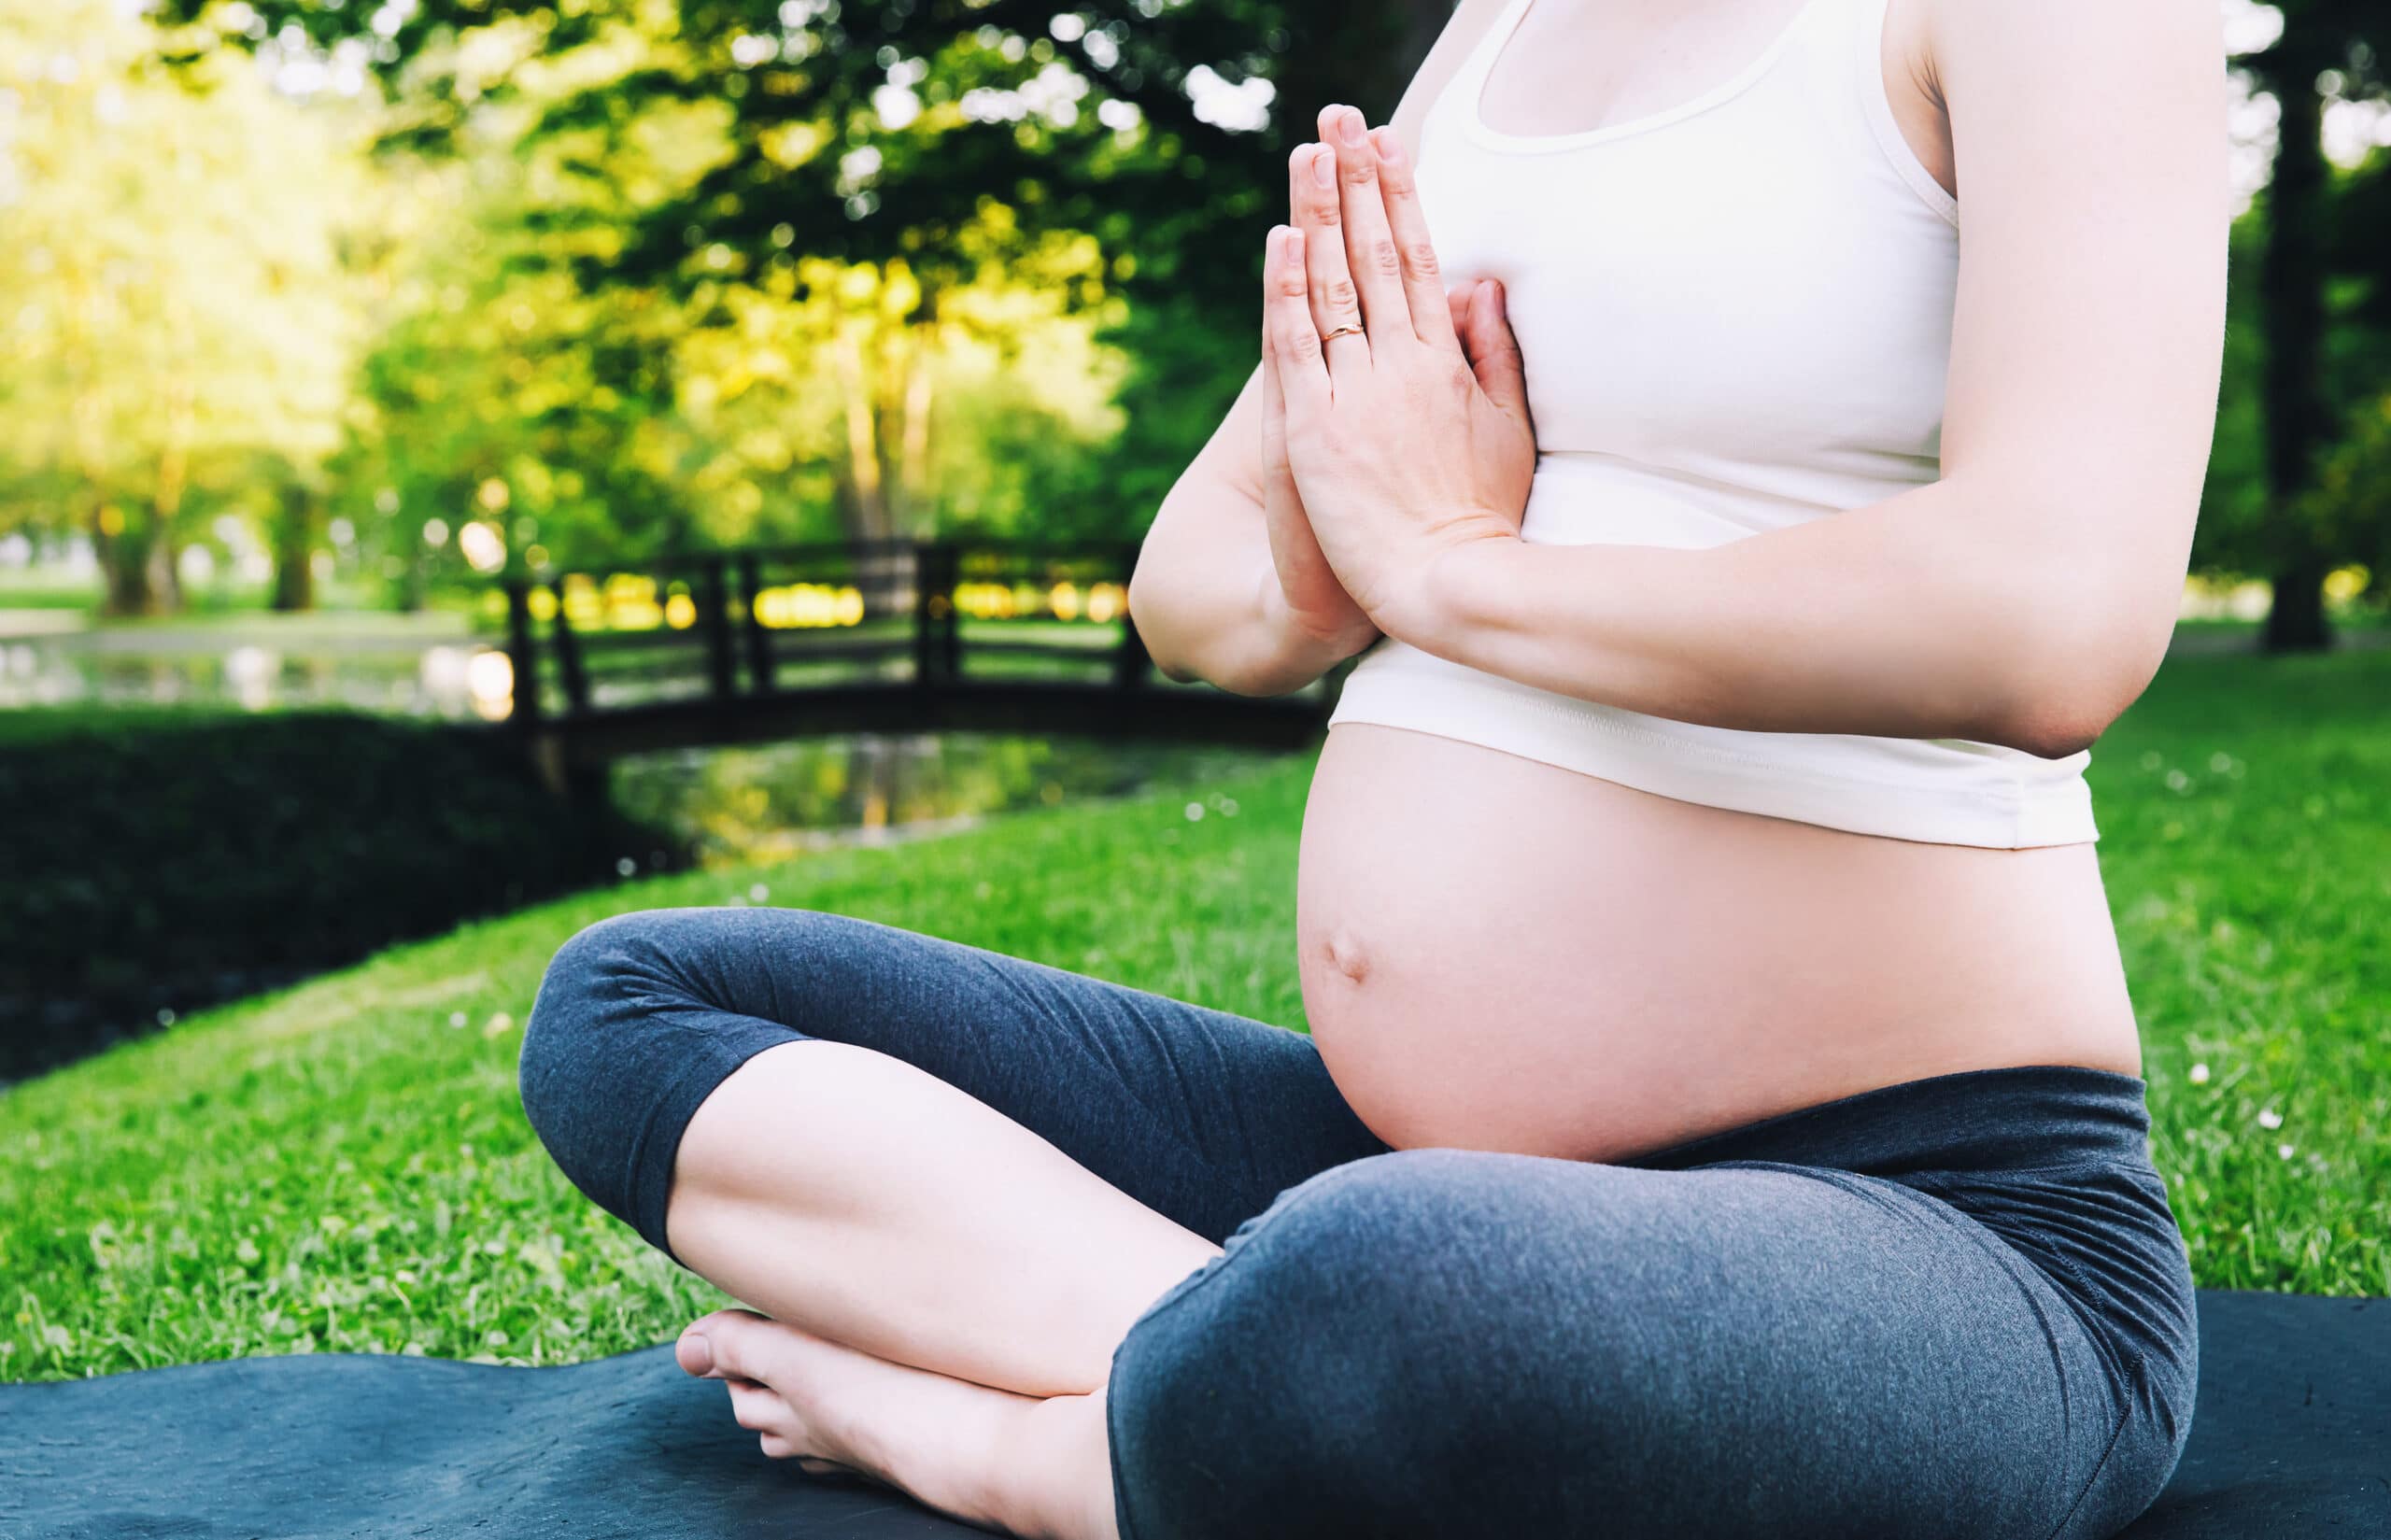 Fertility Yoga